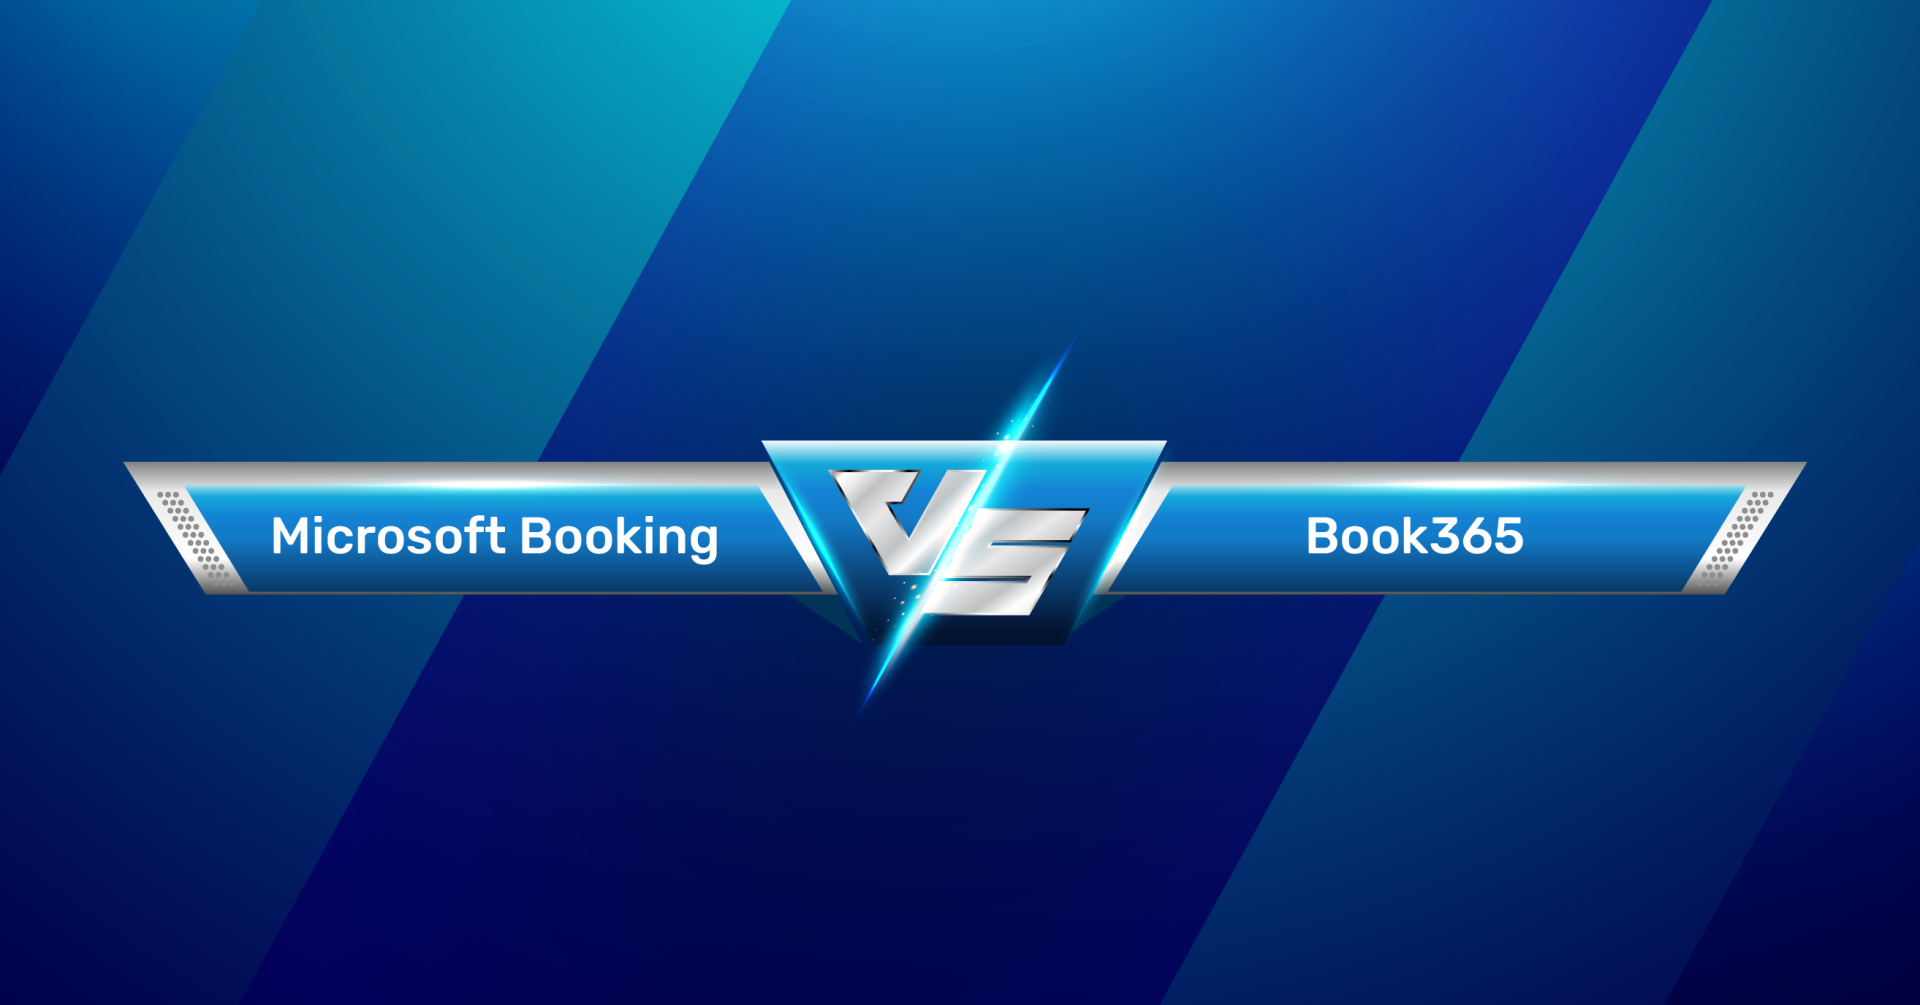 Microsoft Bookings vs Book365